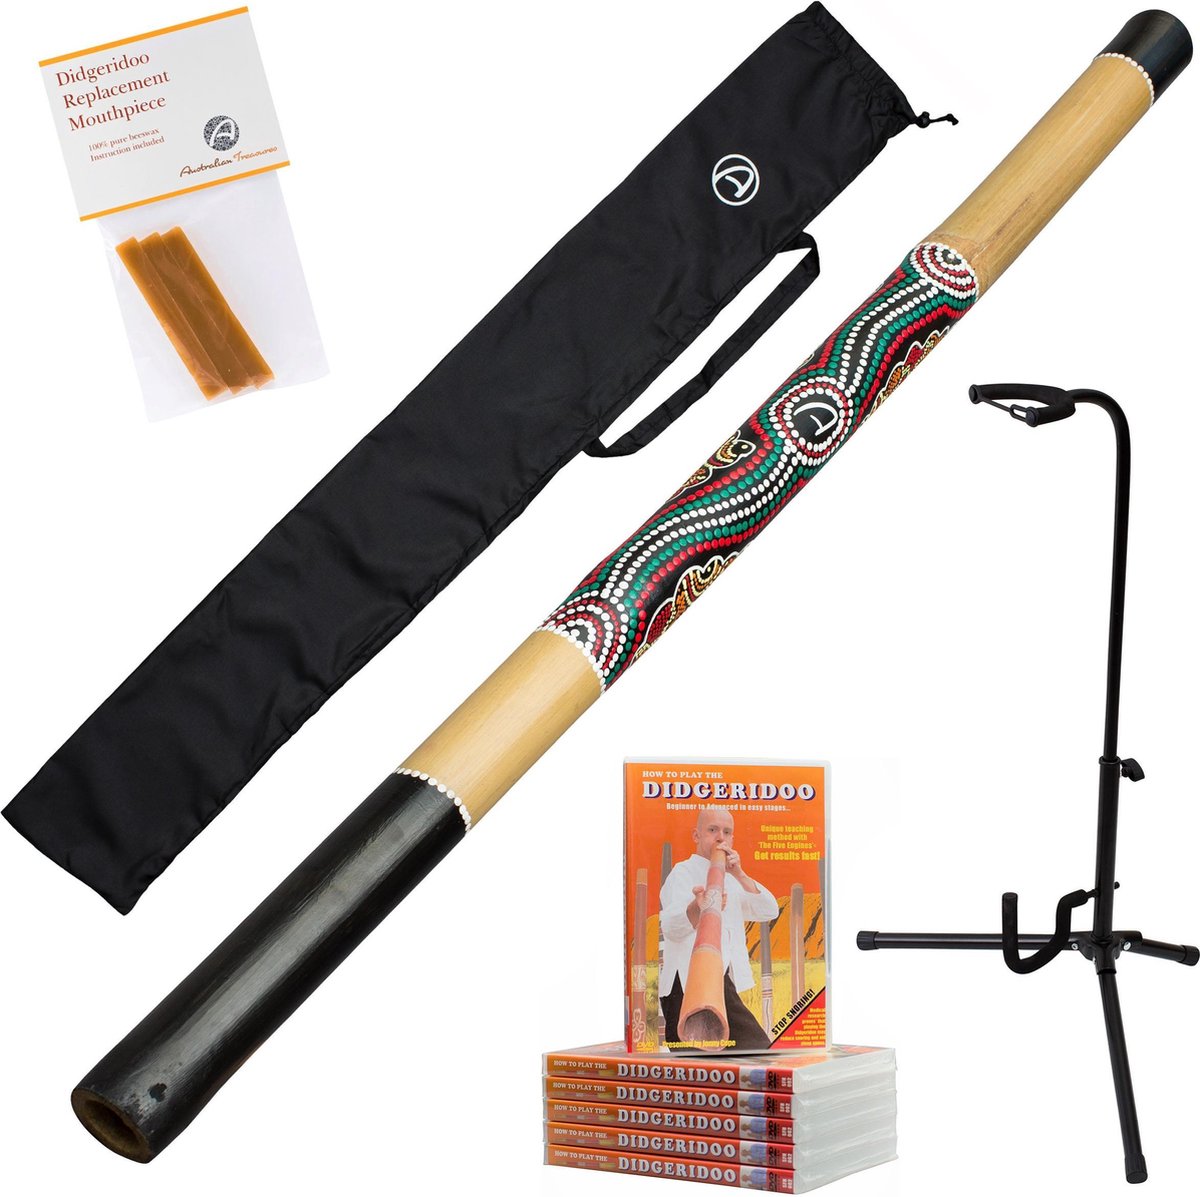 5-delige didgeridoo starterspakket bestaande uit bamboe didgeridoo 120cm inclusief nylon didgeridootas | lesvideo 85min | 3 reepjes pure imker bijenwas | stabiele didgeridoostandaard | bekijk de video!